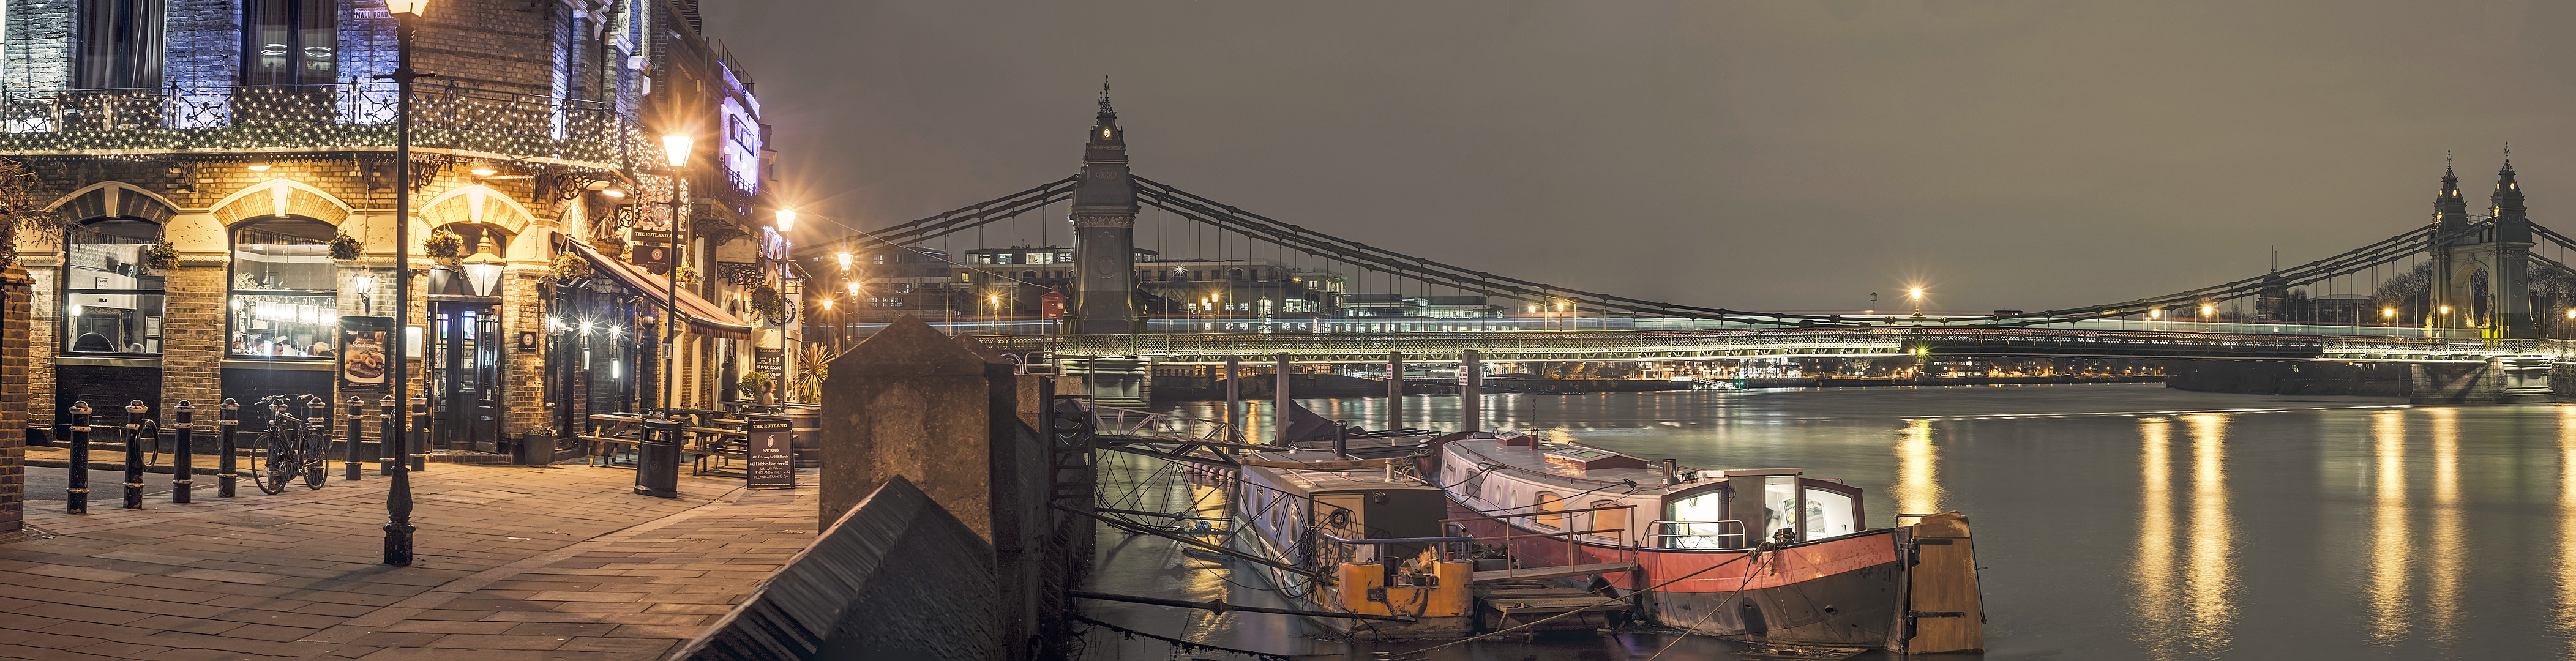 Panorama of the Hammersmith bridge by Dragisa Braunovic